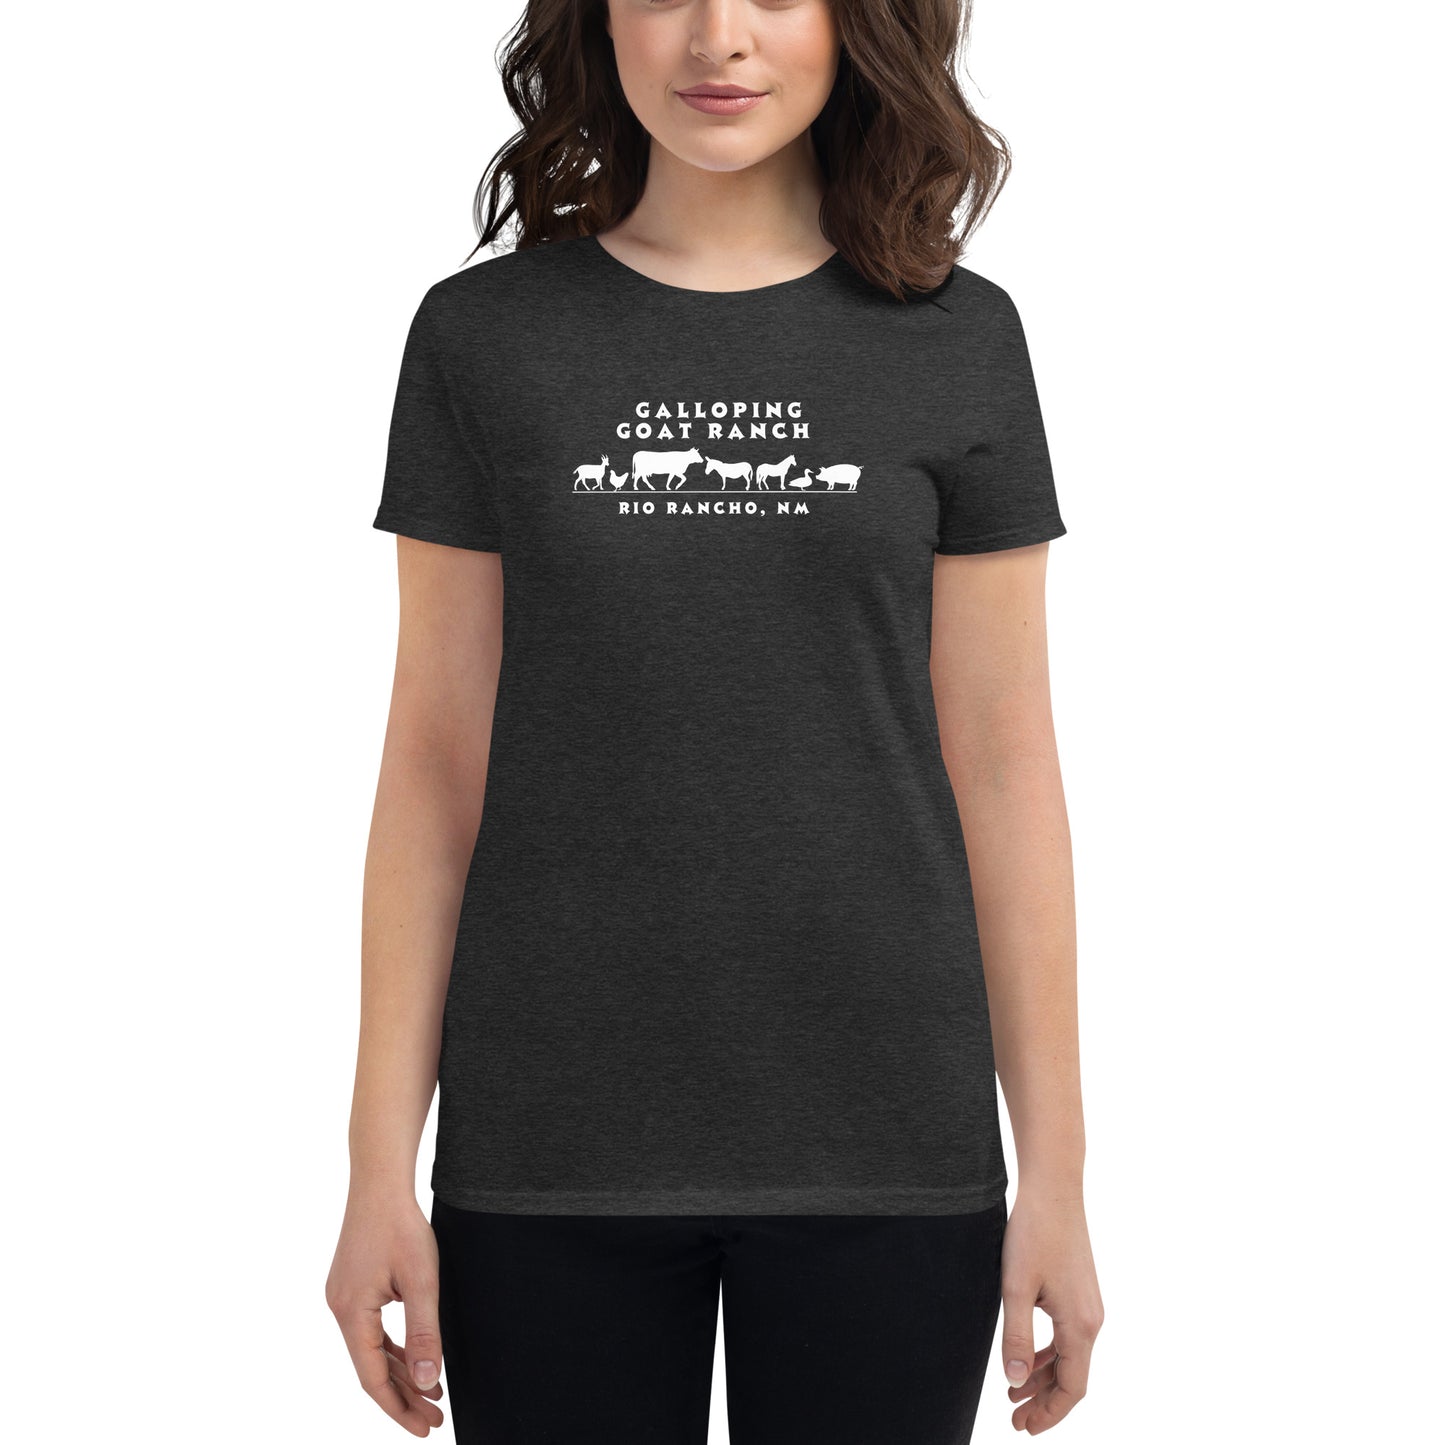 a. Galloping Goat Ranch Animals: Women's Short Sleeve T-shirt